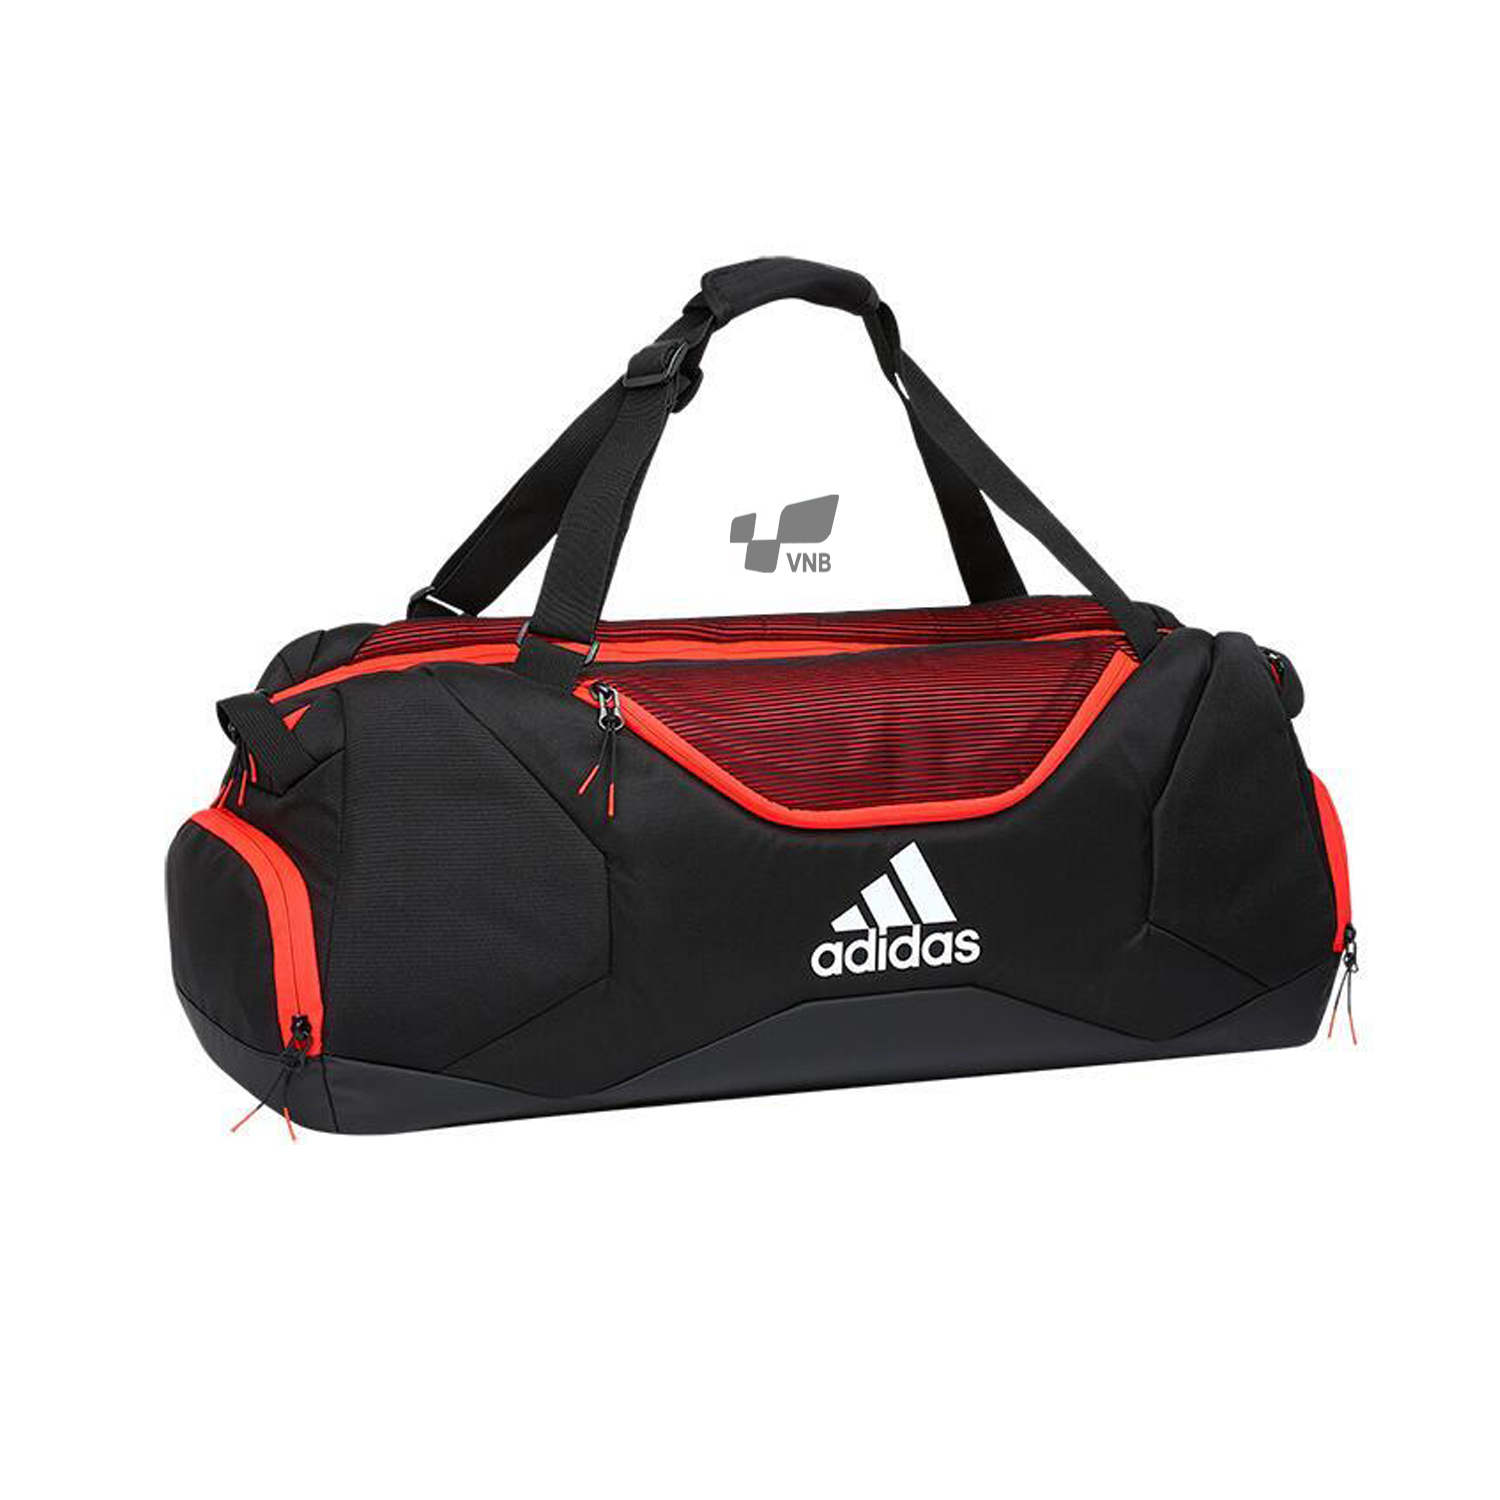 Túi cầu lông Adidas XS5 Tournament Bag - Đen Đỏ chính hãng